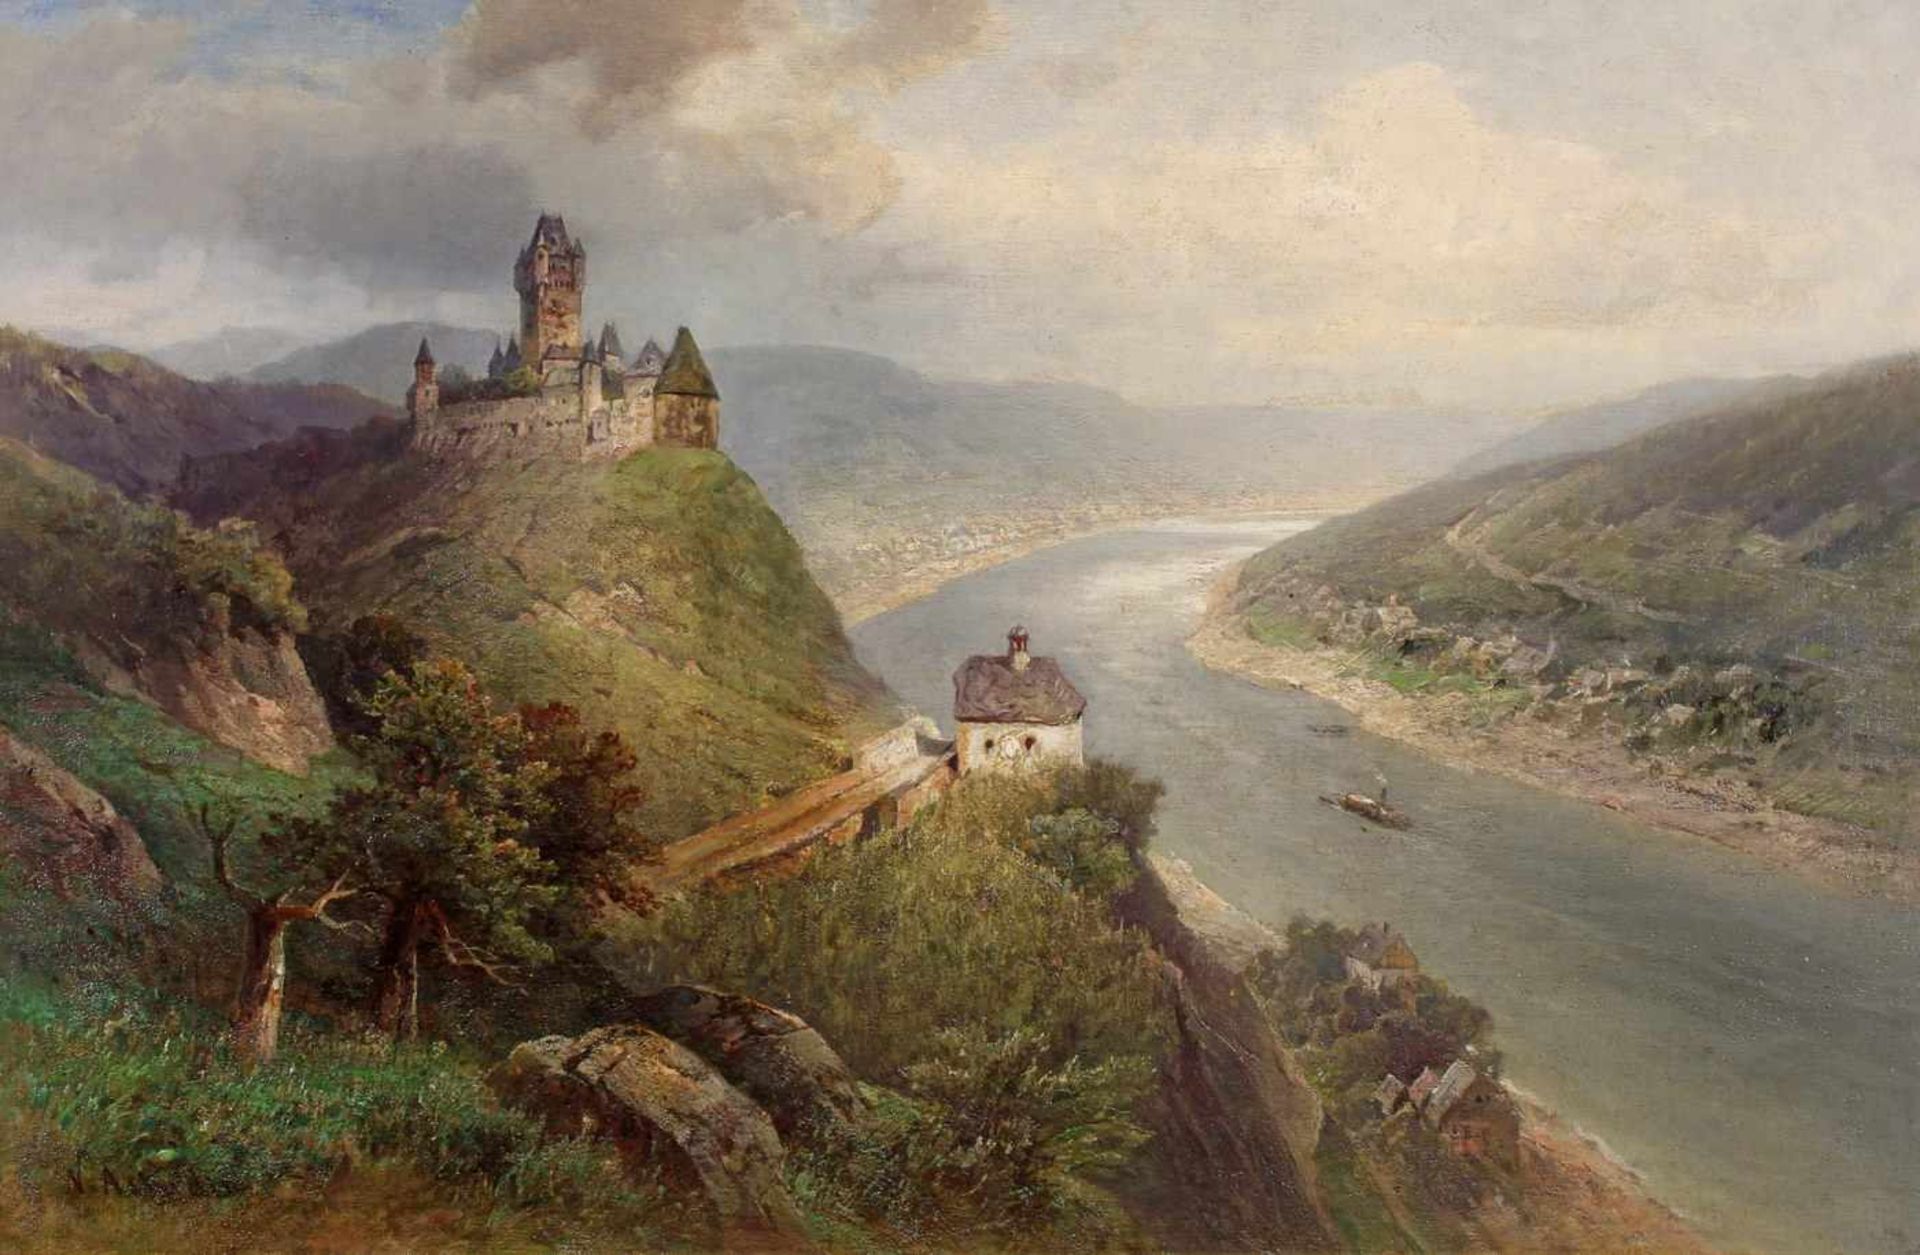 Astudin, Nicolai von (1847/49 Moskau - 1925 Oberlahnstein, deutsch-russischer Landschaftsmaler), "